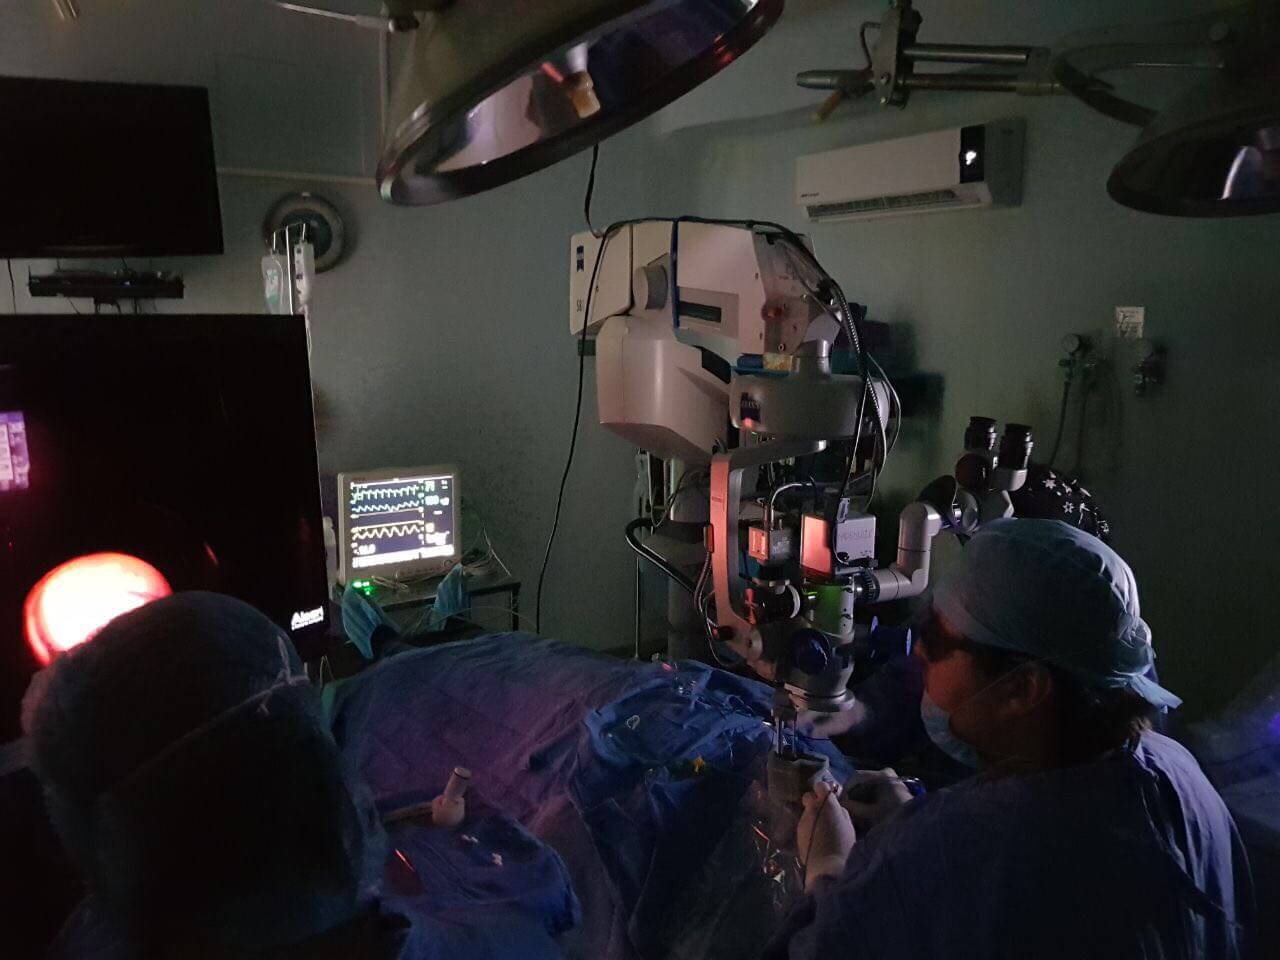 Foto de cirugía donde aparece el Dr. Alain Matabuena Dorado con láser en un cuarto oscuro.